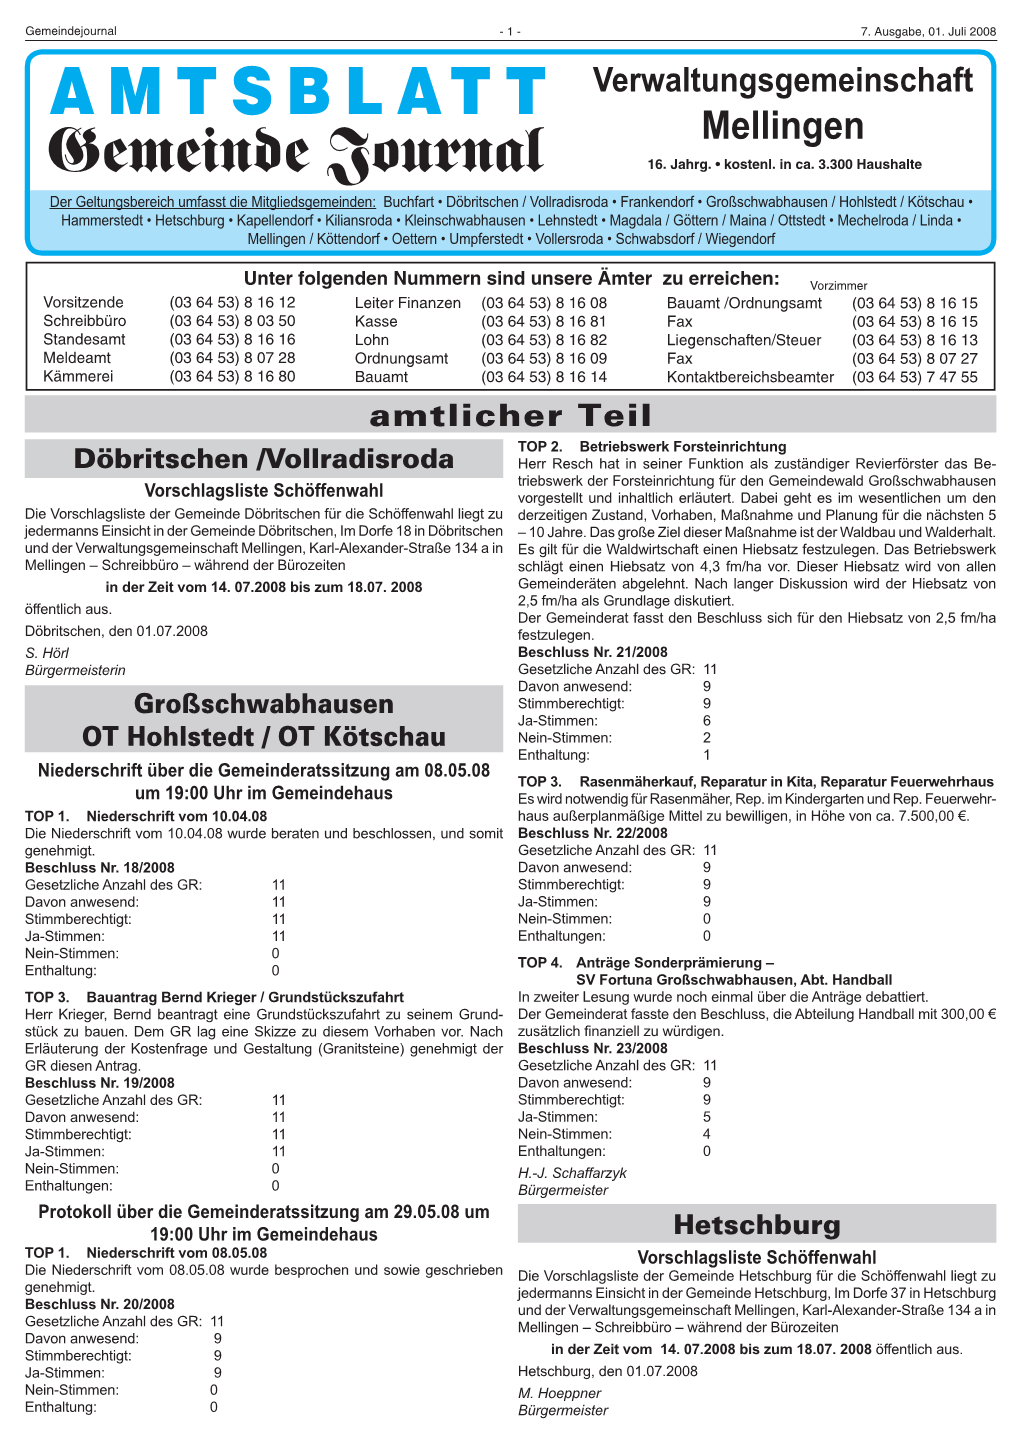 Amtsblatt 07-08.Indd